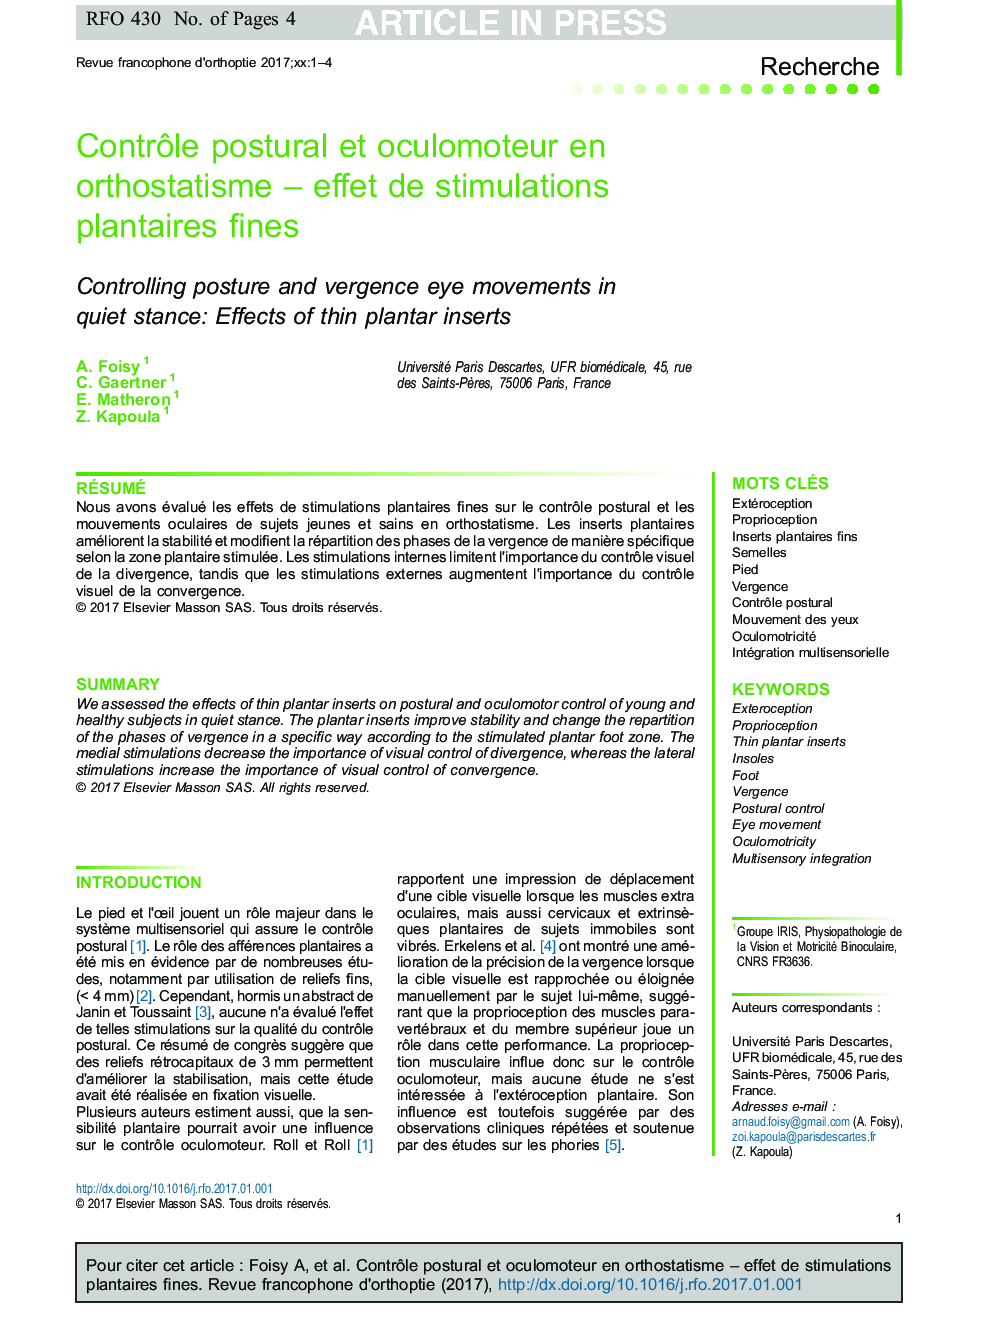 ContrÃ´le postural et oculomoteur en orthostatisme -Â effet de stimulations plantaires fines